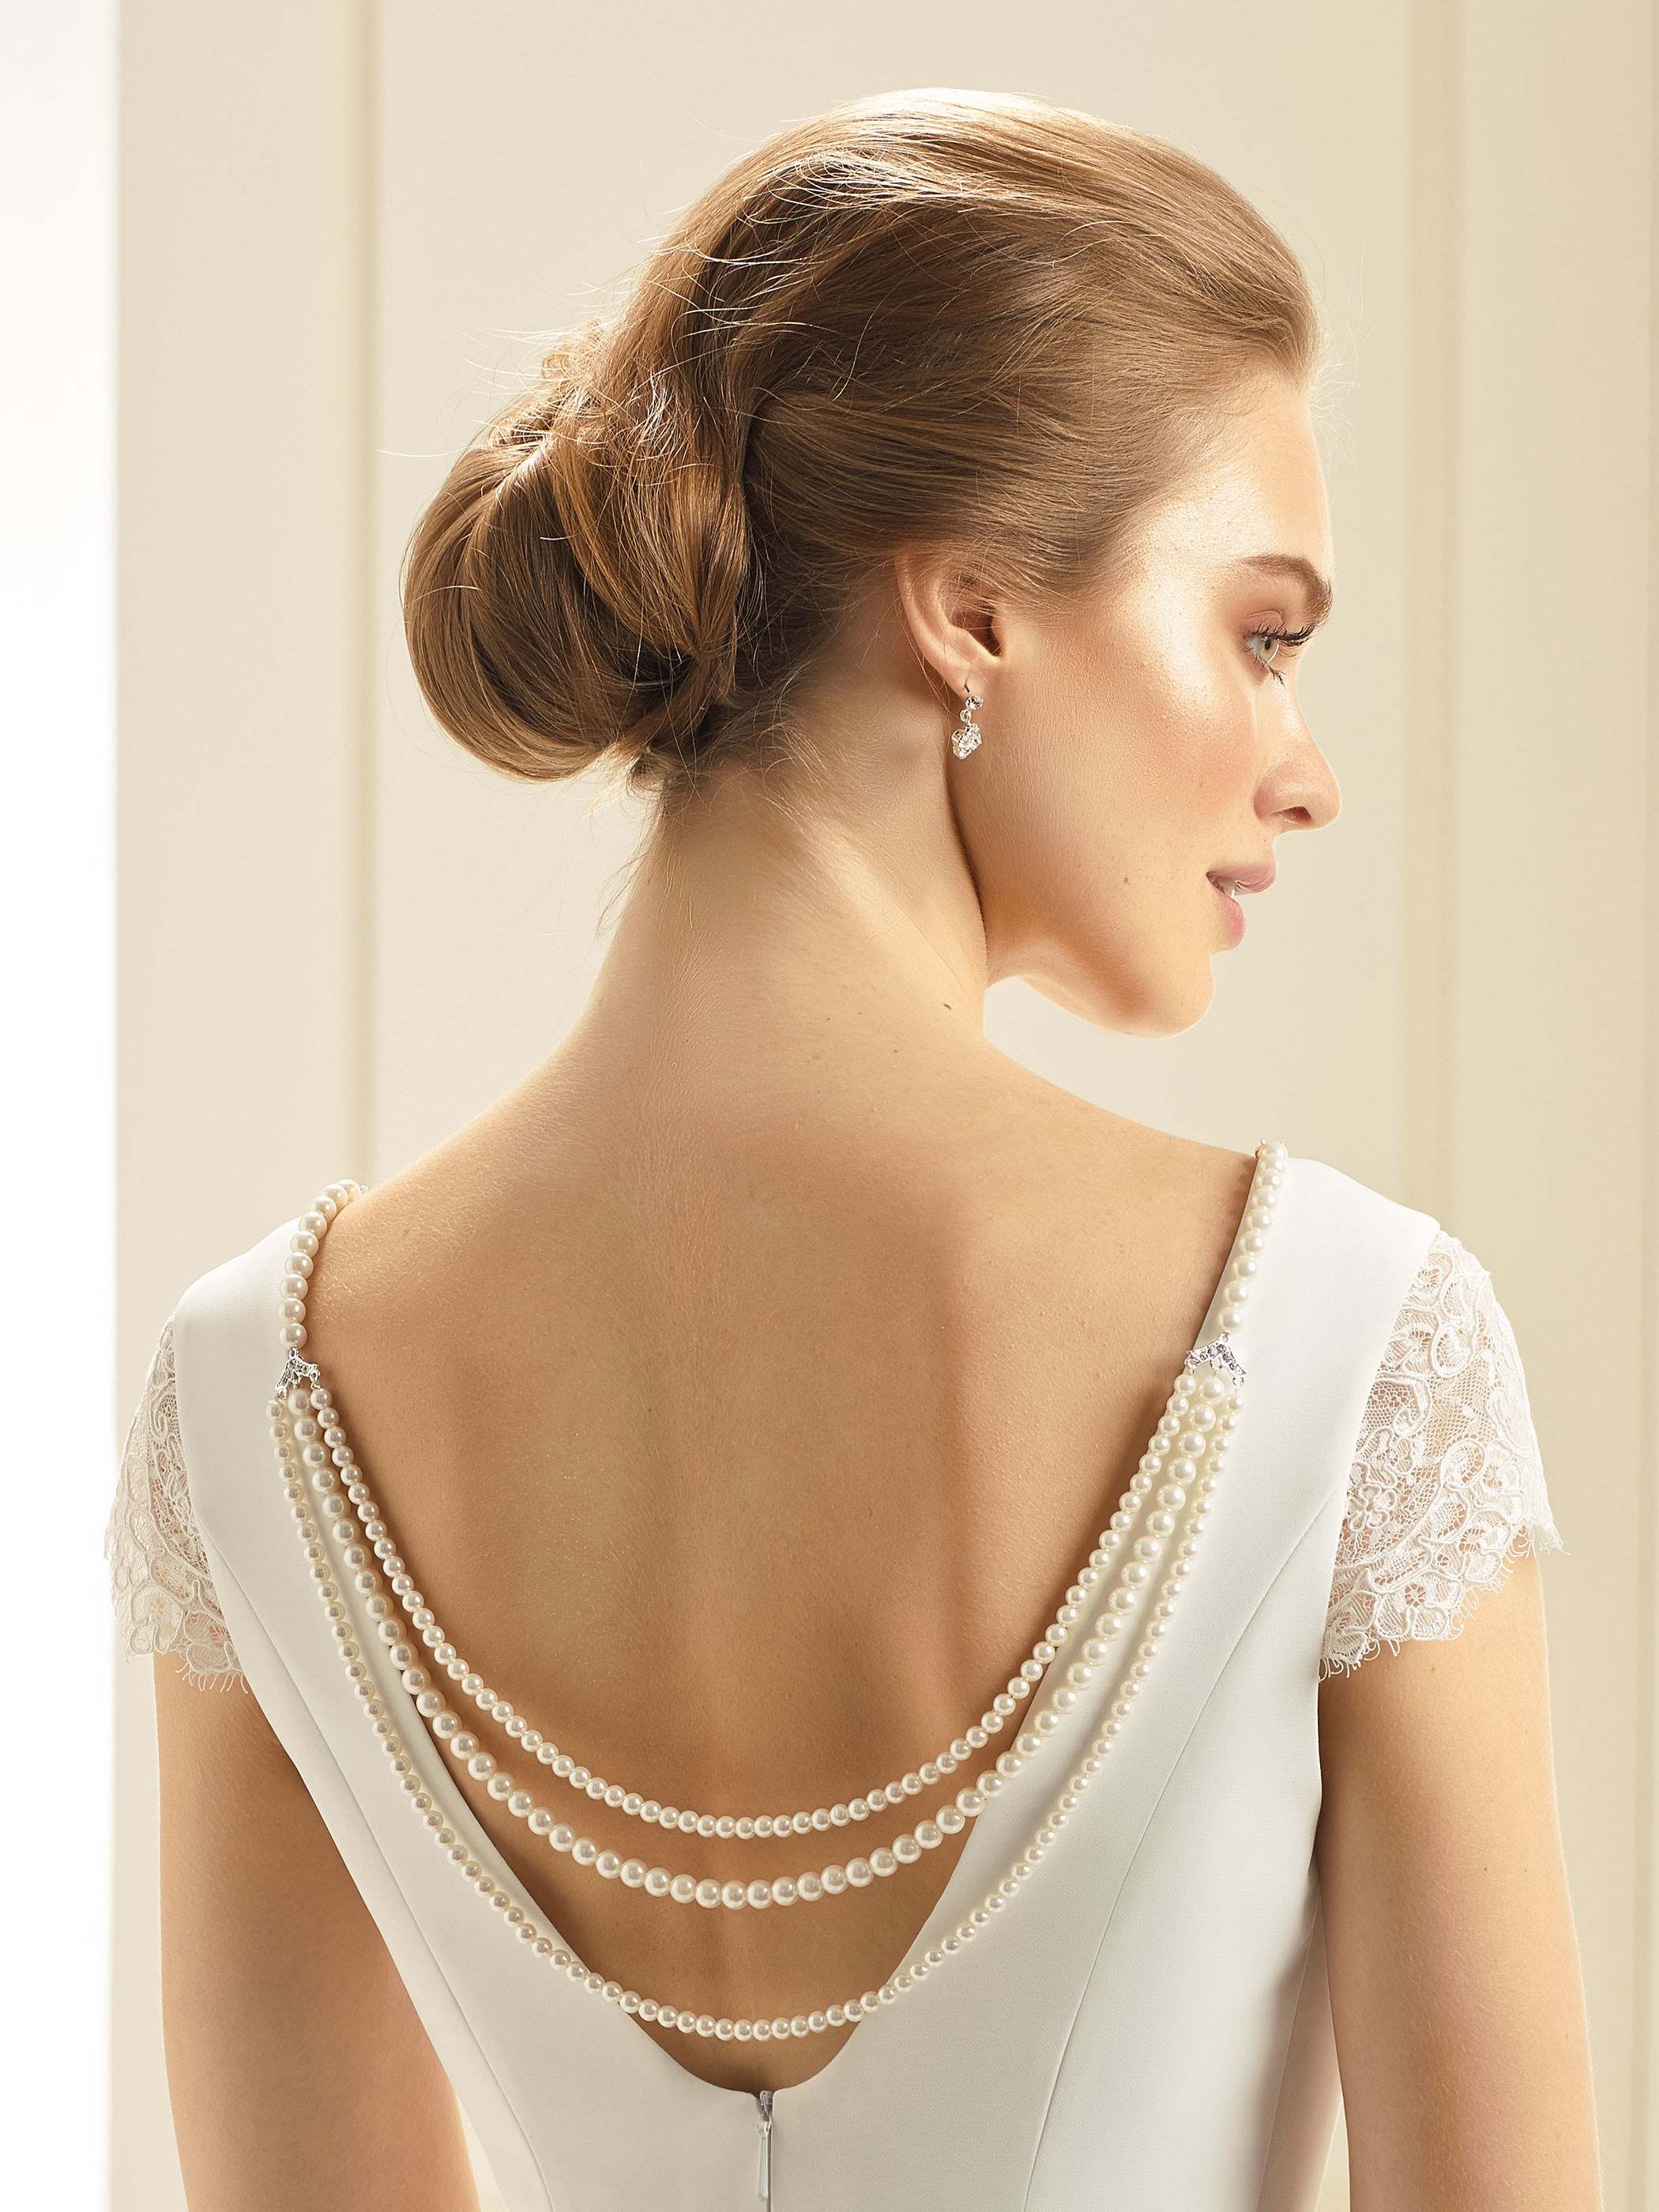 Stilvolle Rückenkette für Brautkleider